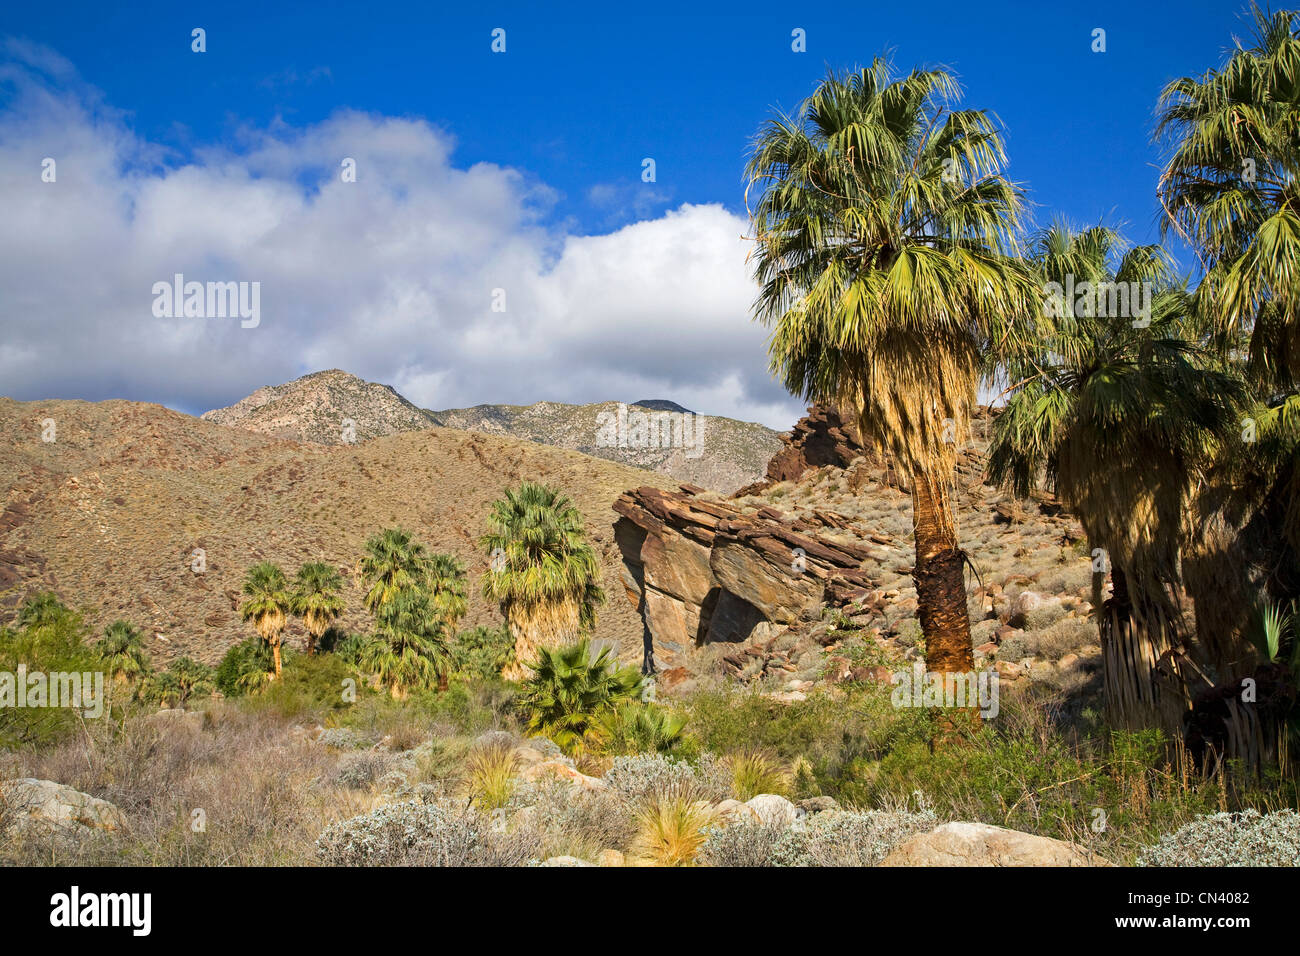 Un randonneur en Murry Canyon, les Canyons Indiens, près de Palm Springs, Californie Banque D'Images